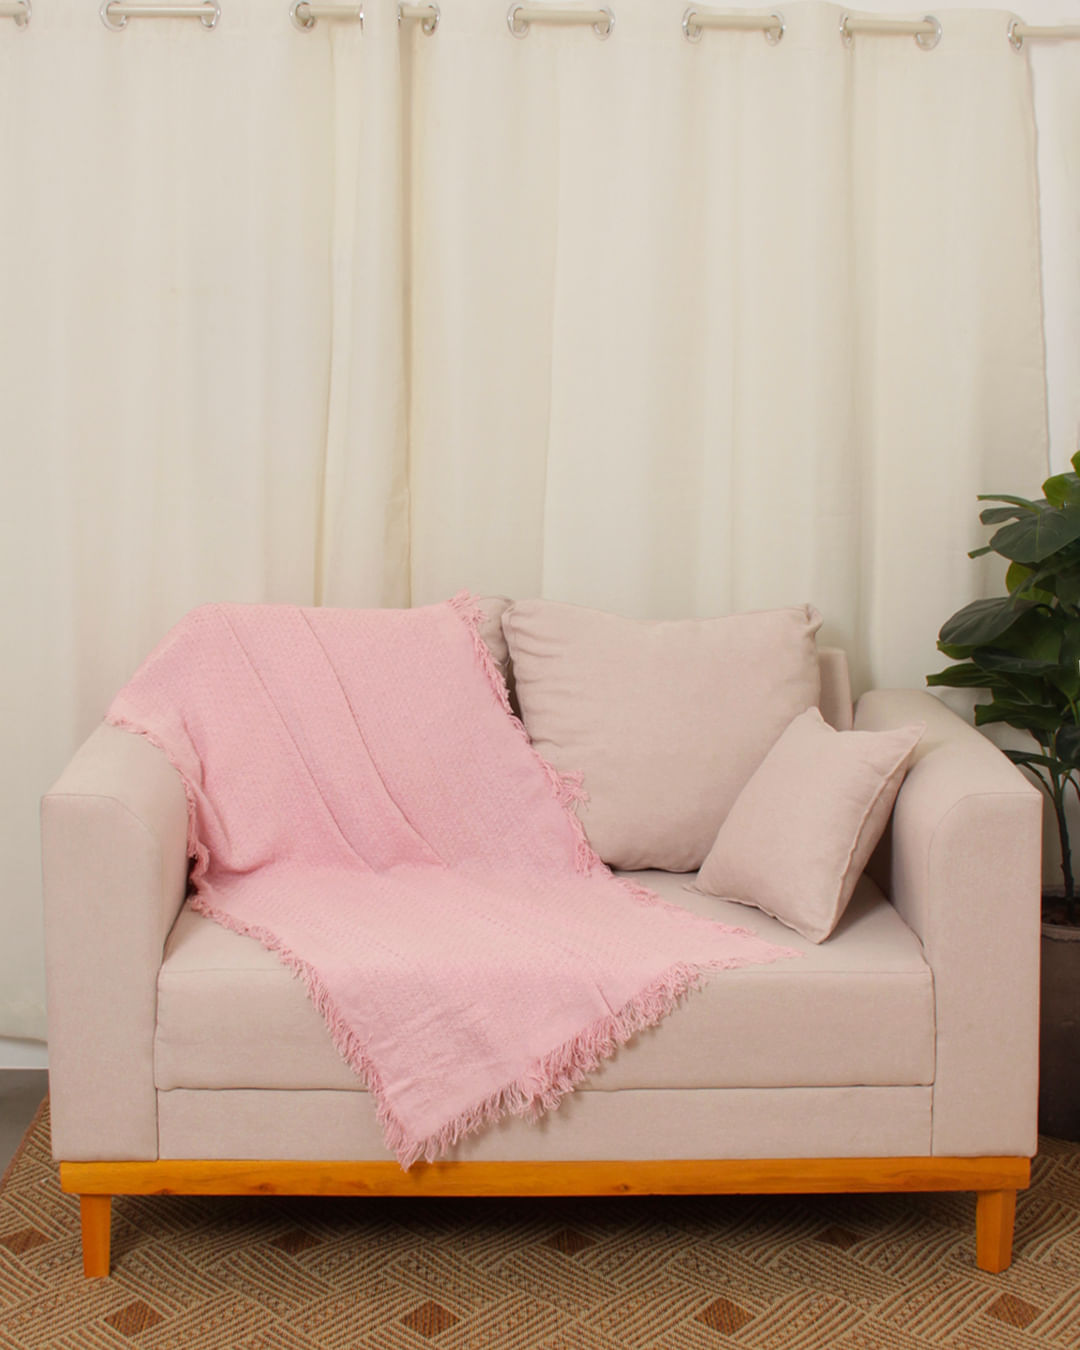 5 modelos de mantas estampadas para sofá